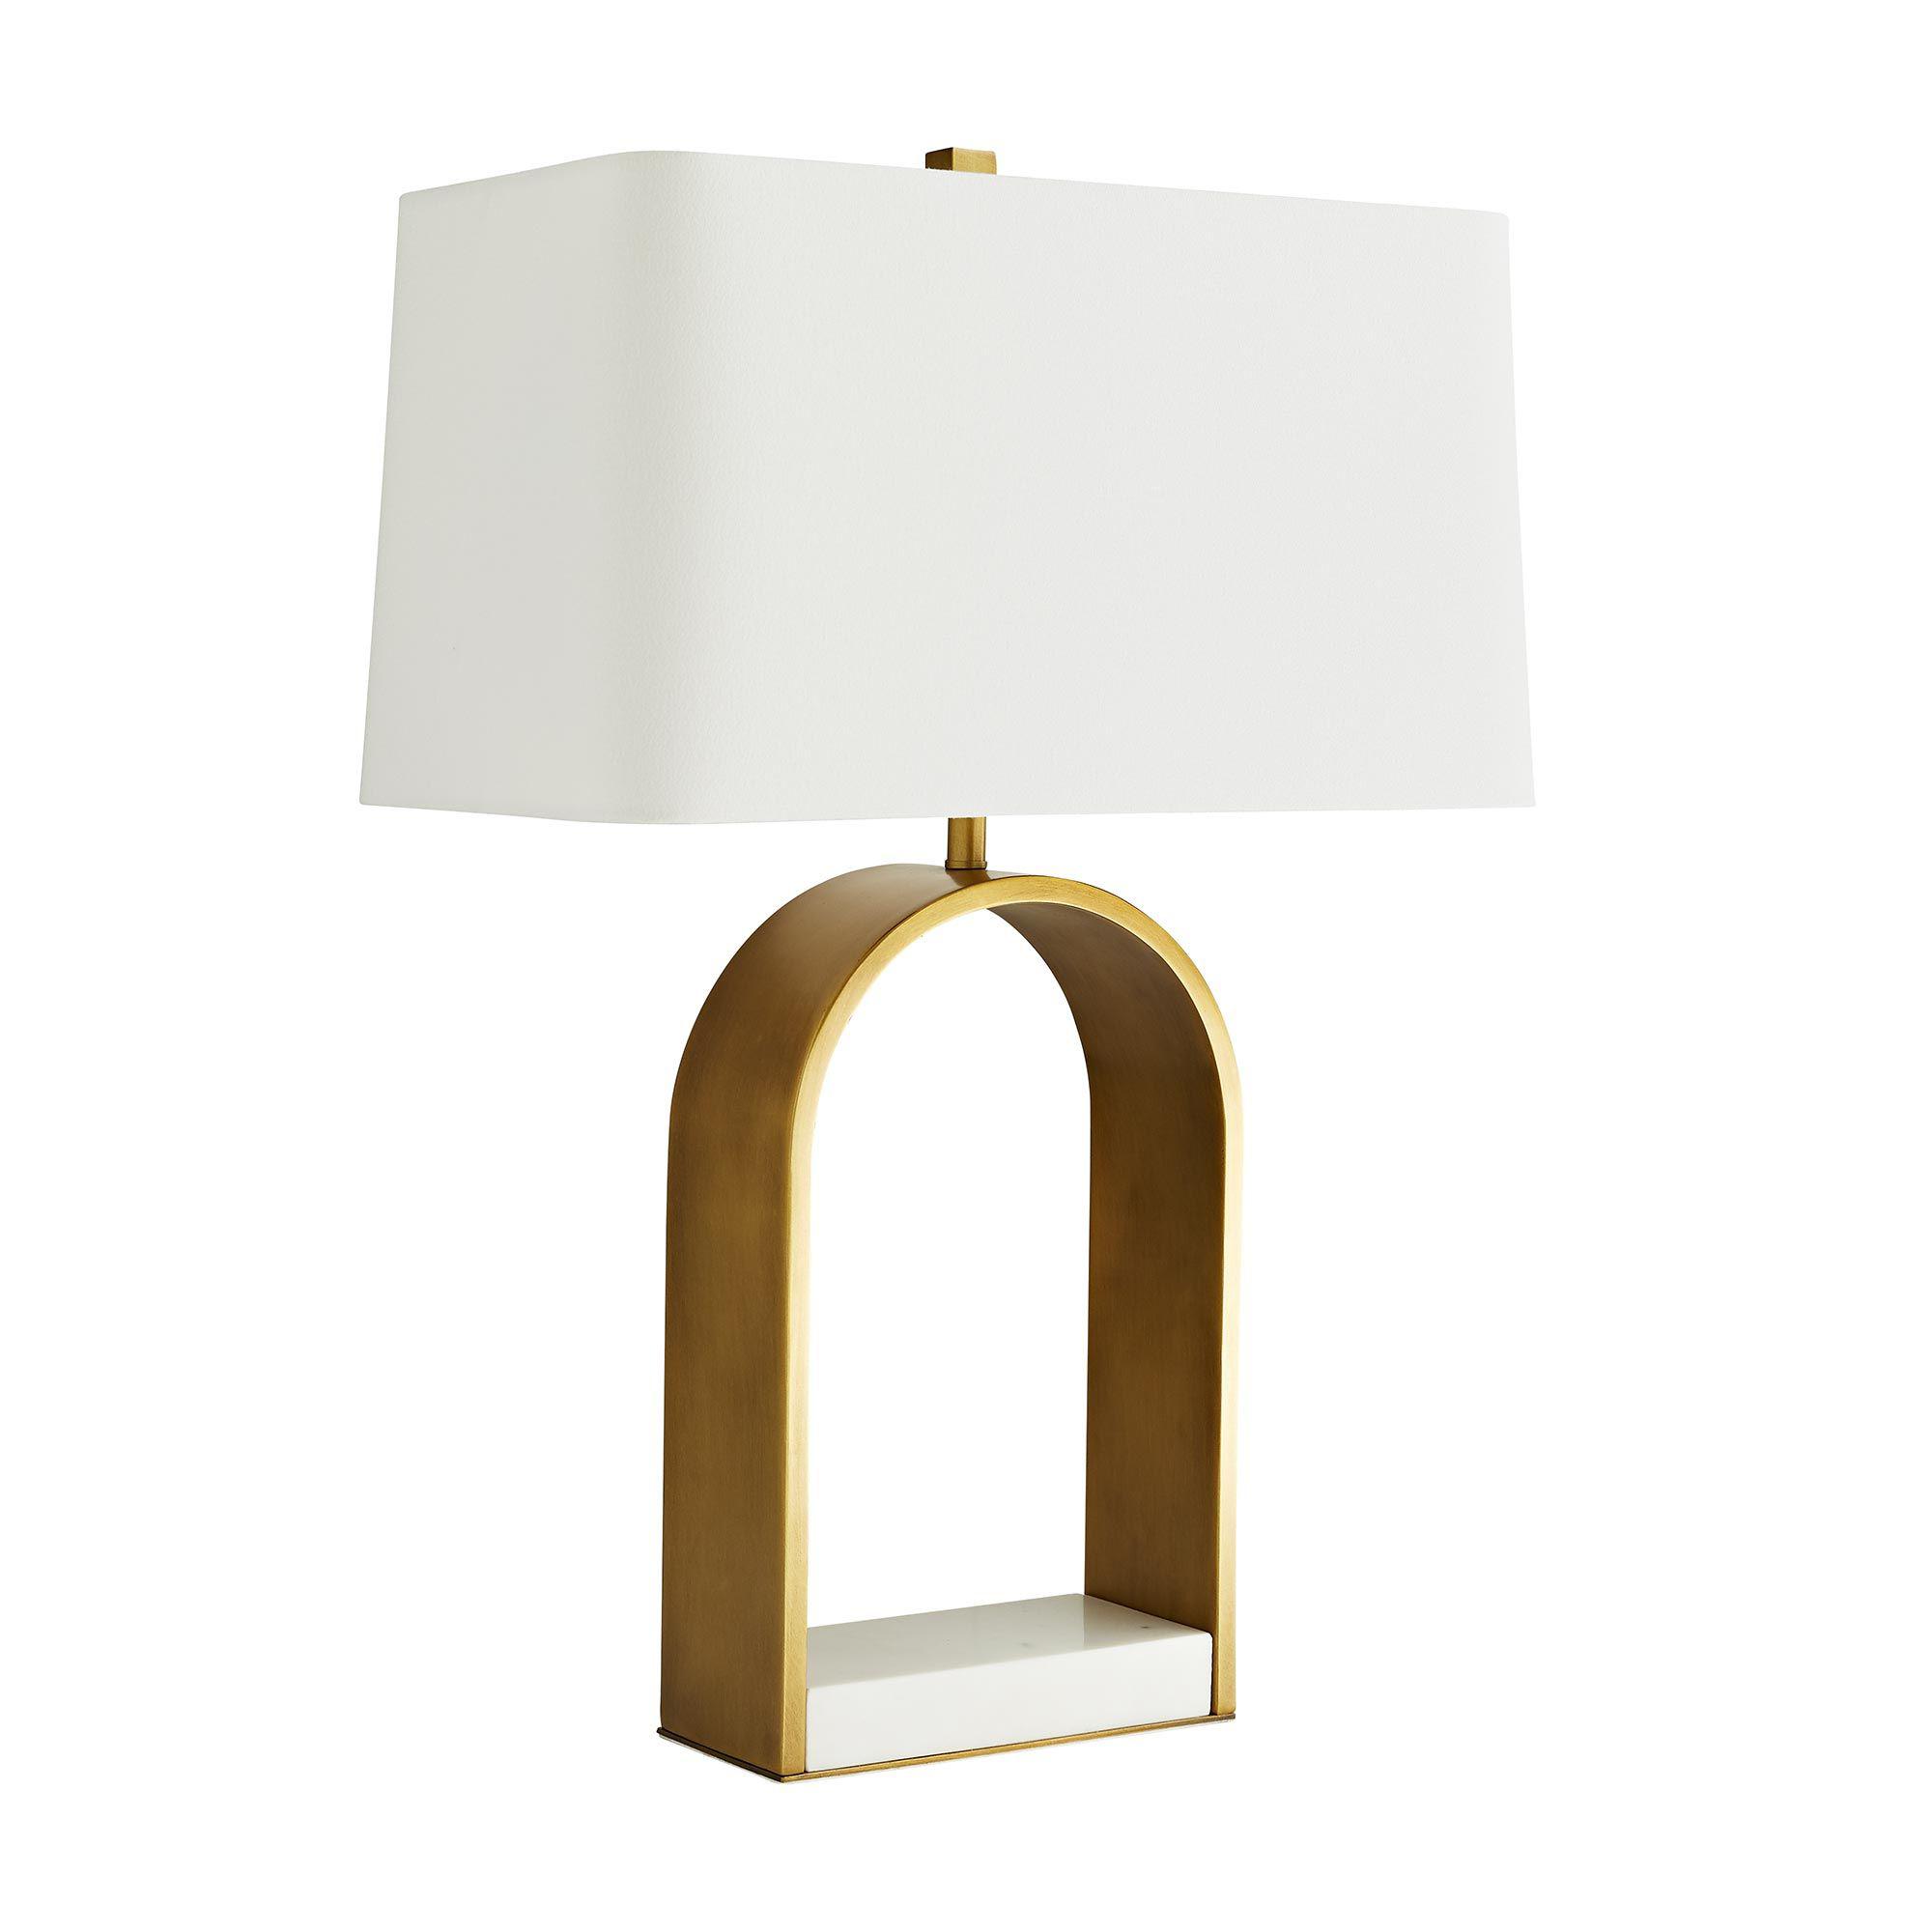 Купить Настольная лампа Rylan Lamp в интернет-магазине roooms.ru